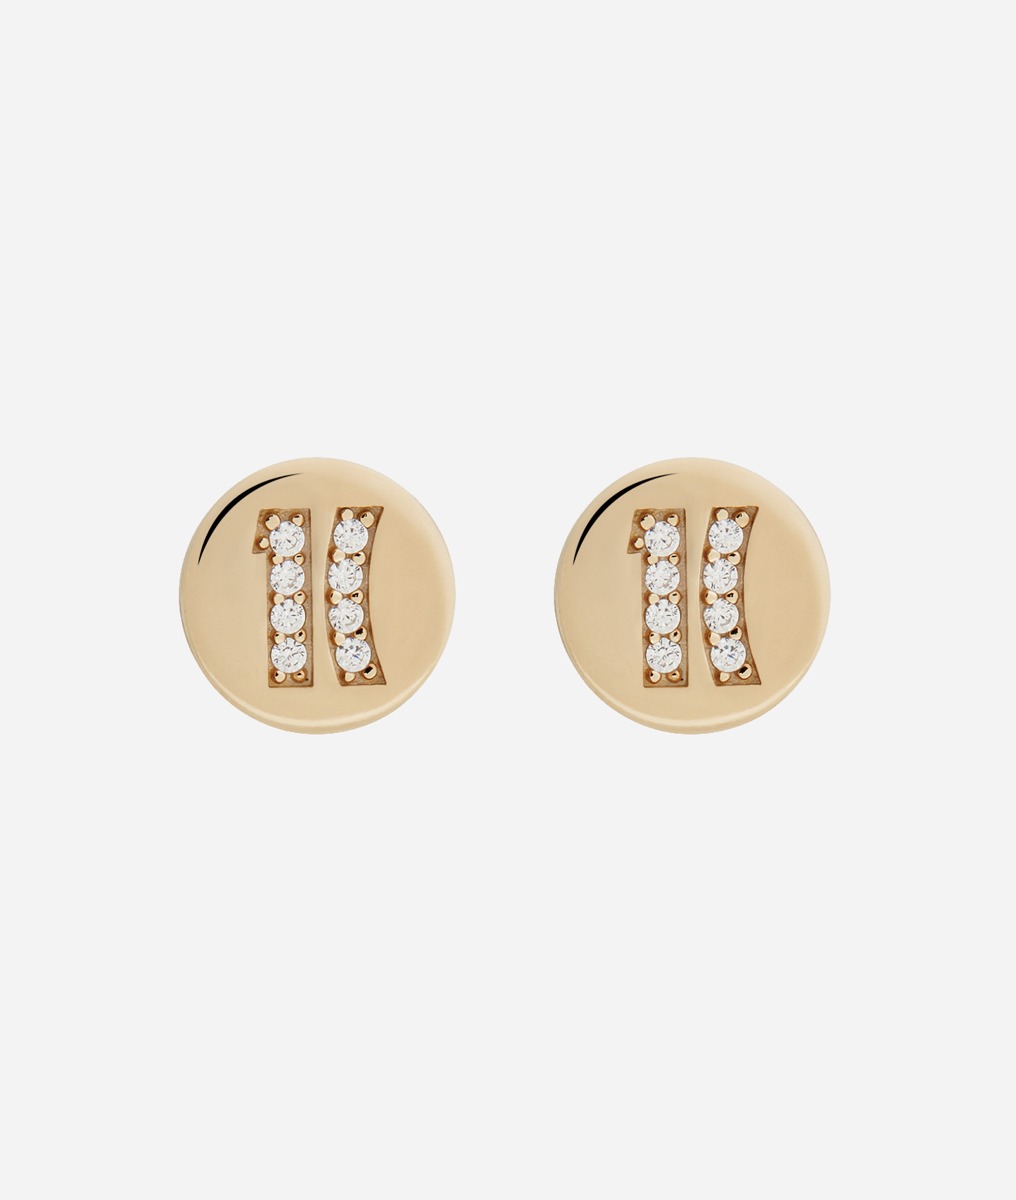 Fifth Avenue orecchini piccoli con logo 1C in zirconi bianchi bagnati in Oro Giallo